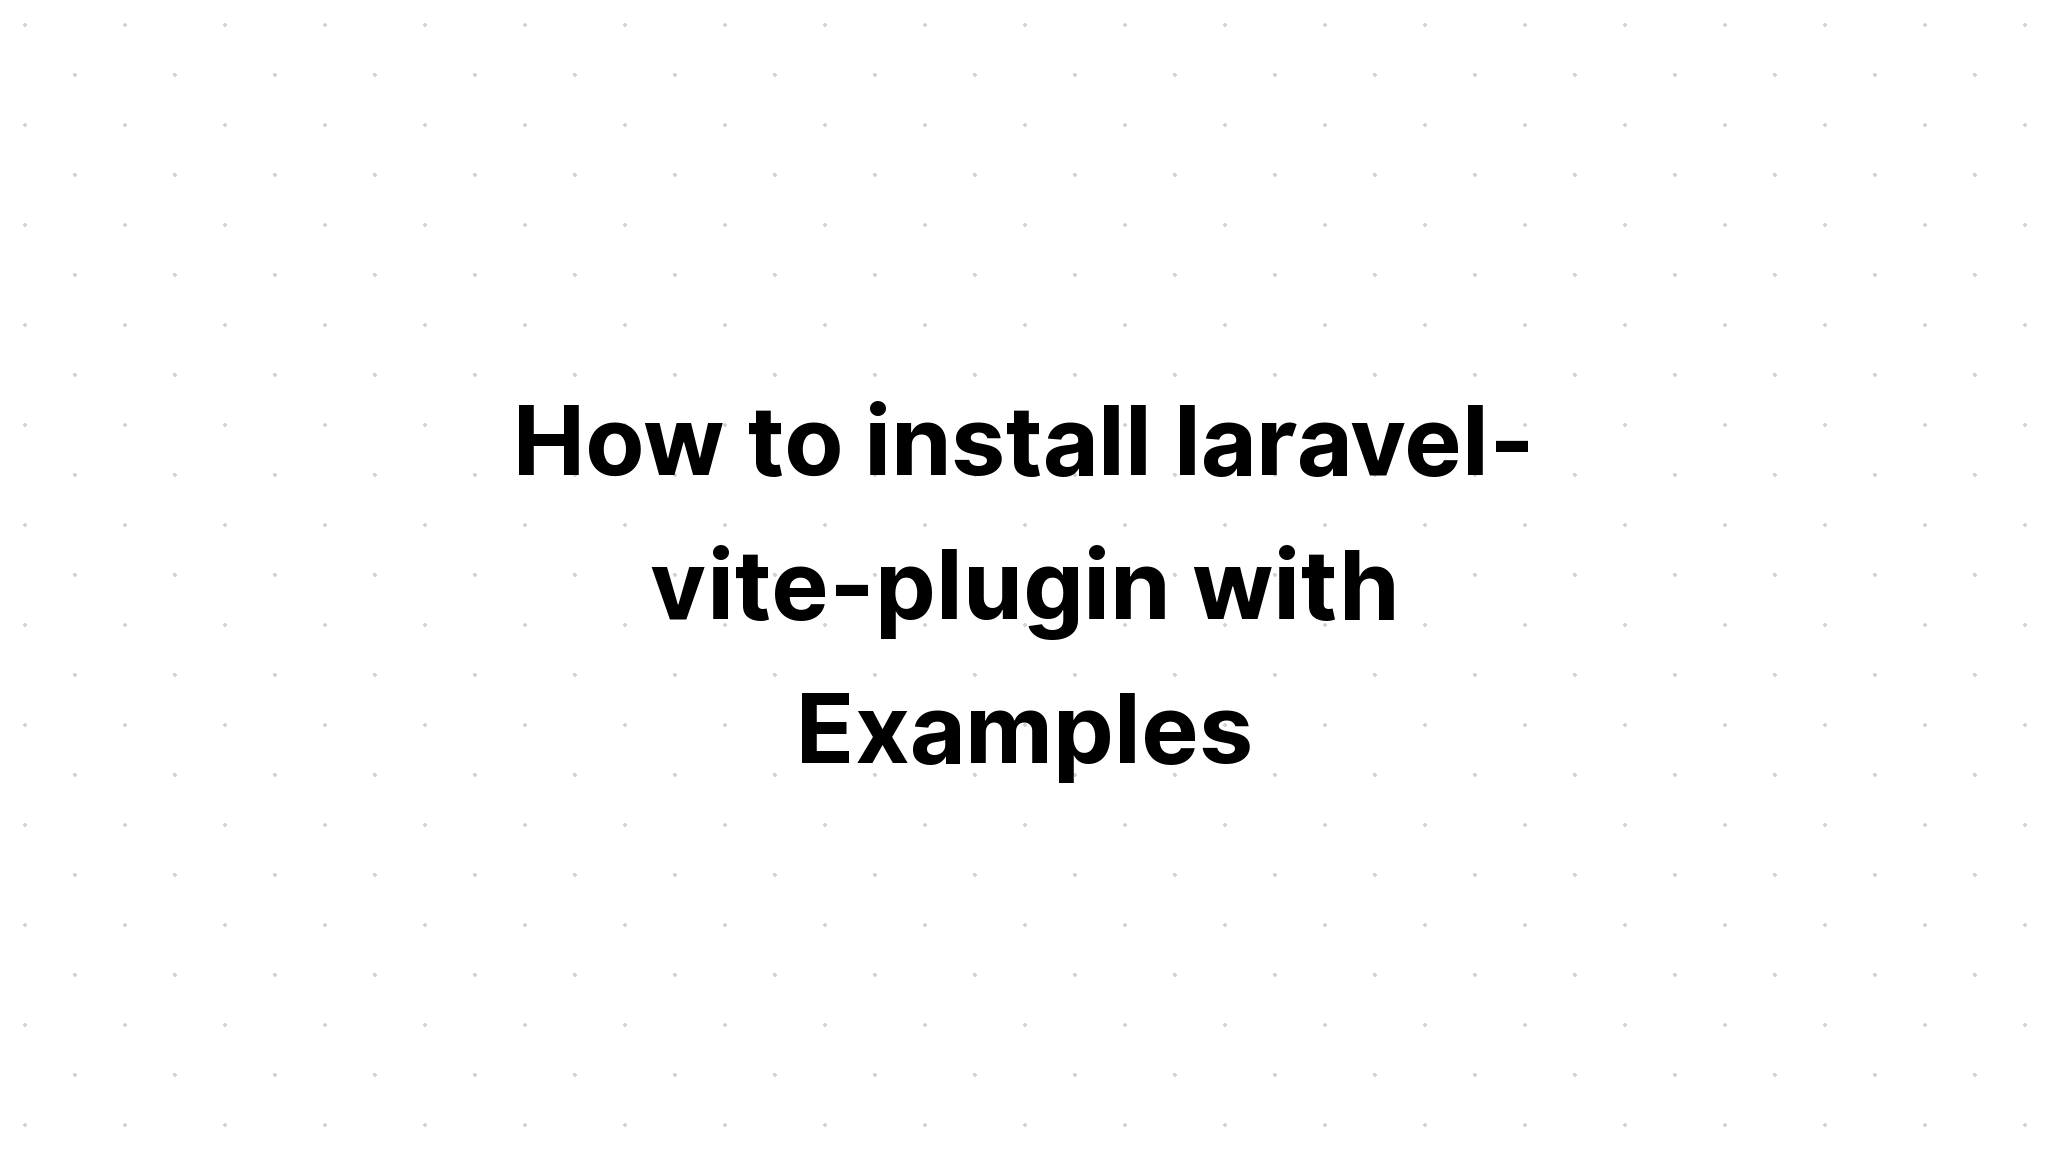 Cách cài đặt laravel-vite-plugin với các ví dụ